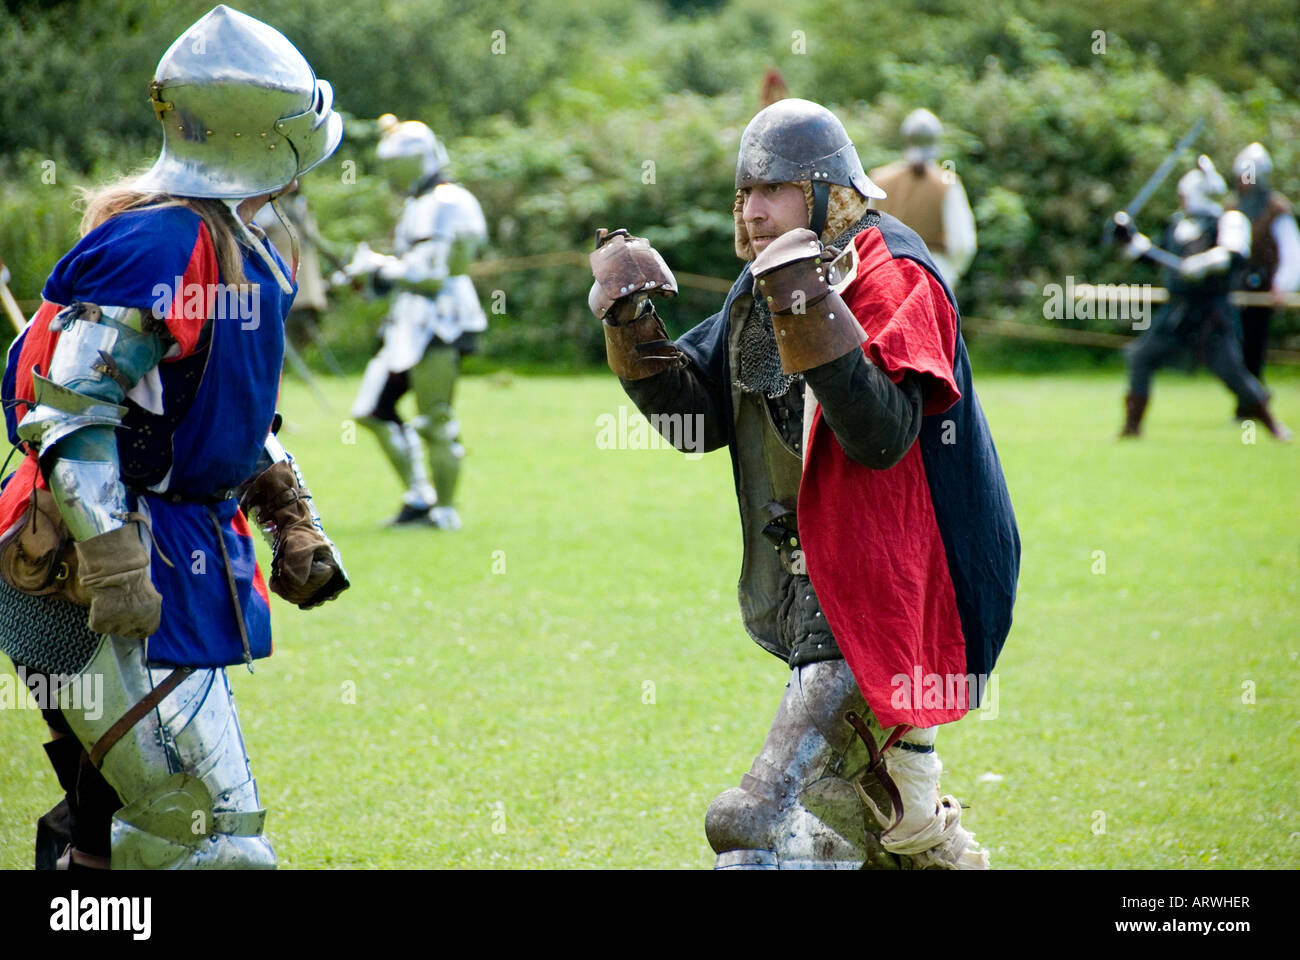 Deux chevaliers en armure la lutte contre la main à la main en milieu de bataille Bataille de Tewkesbury Historique Renactment 1471 Angleterre 2007 NR Banque D'Images